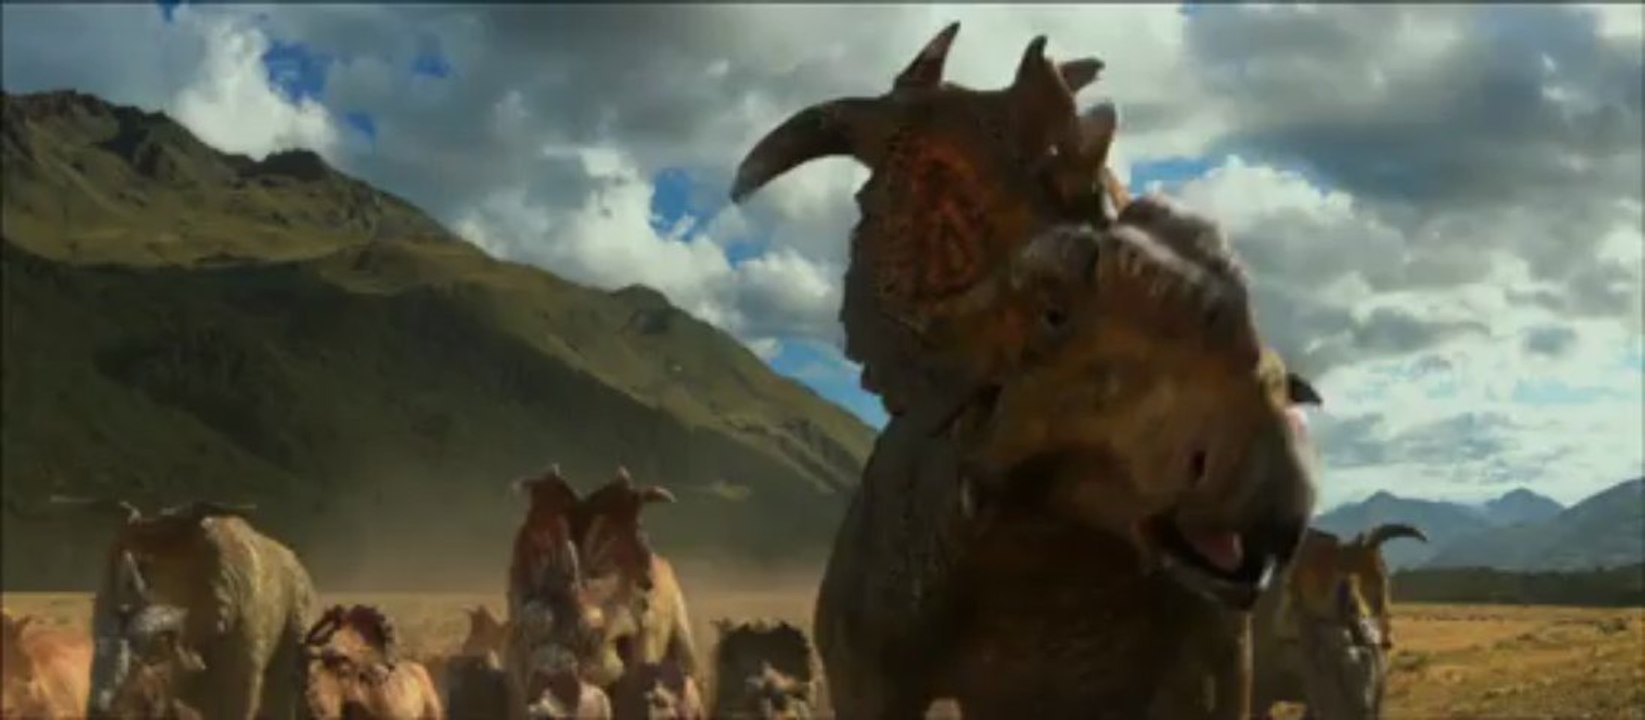 Caminando entre dinosaurios 3D - Trailer en español (HD) - Vídeo Dailymotion